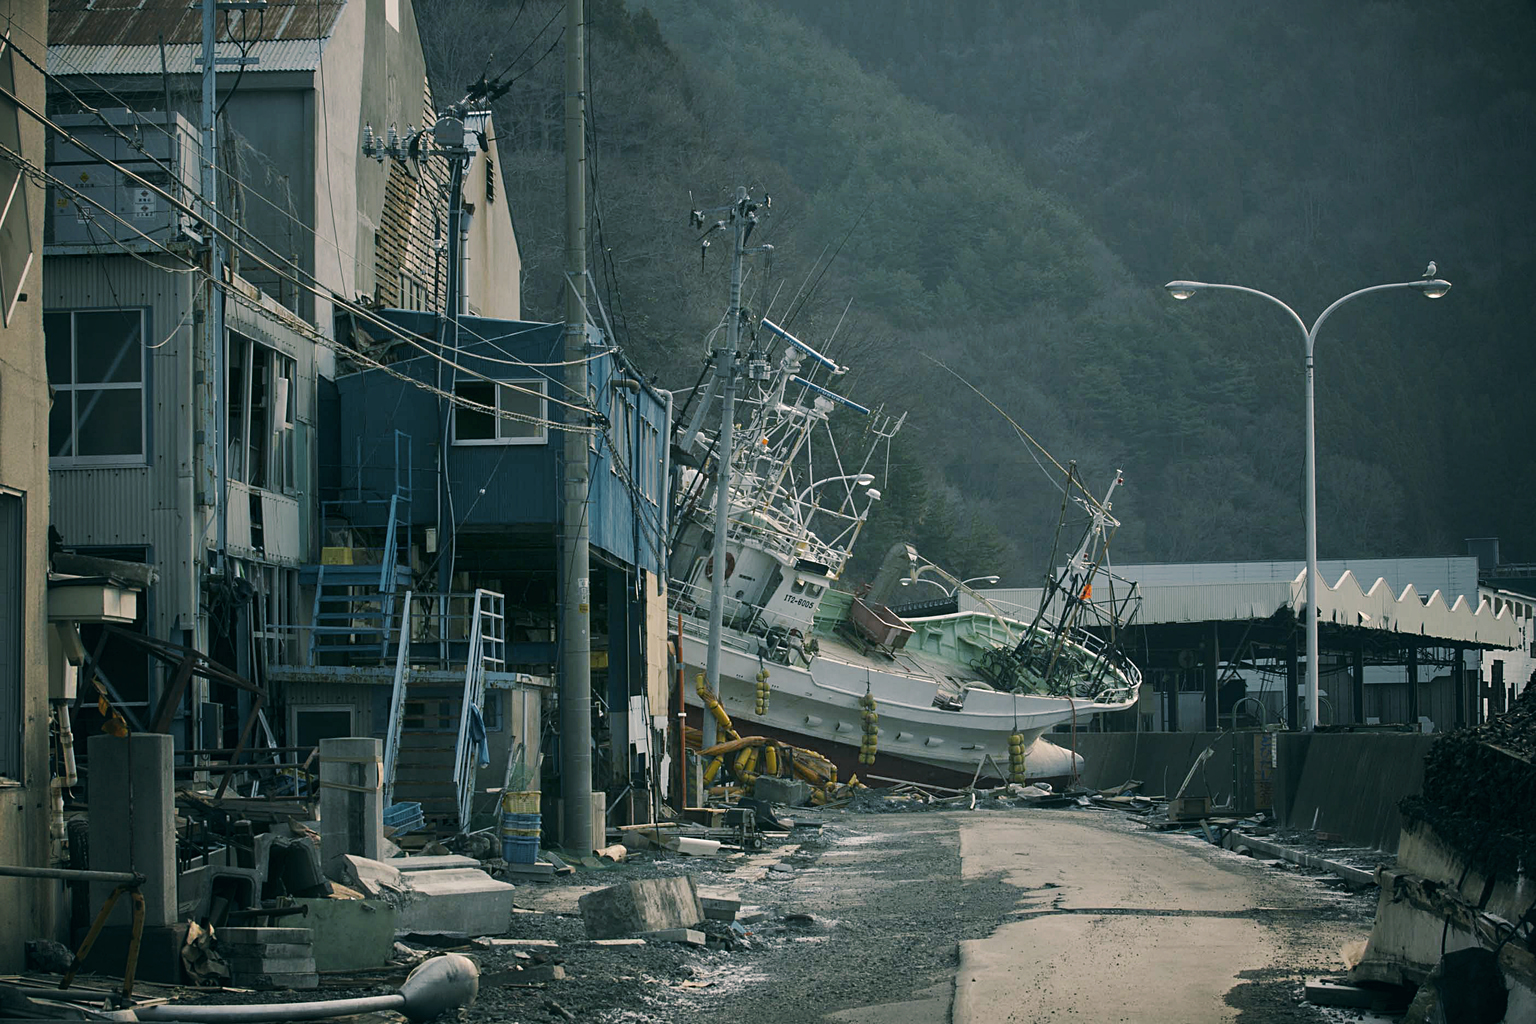 Damage from the Tohoku earthquake and tsunami